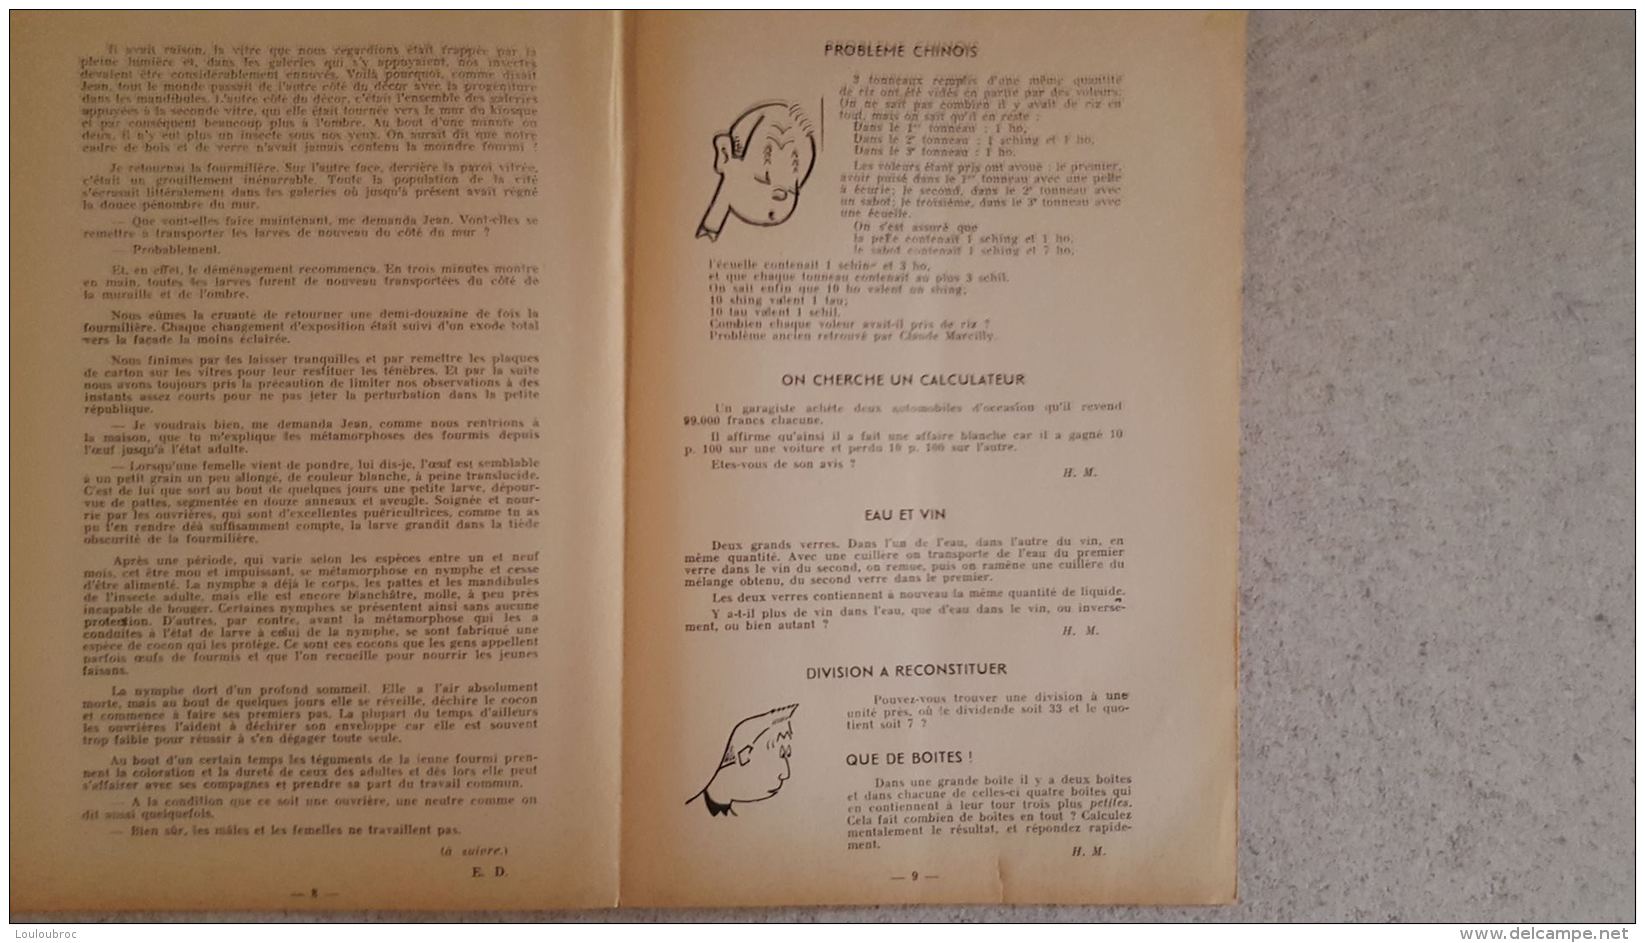 RARE LE FACTEUR X N°9 DE 07/1954 REVUE MENSUELLE DE VARIETES SCIENTIFIQUES EDITIONS DU LEVIER 16 PAGES 24 X 16 CM - Science